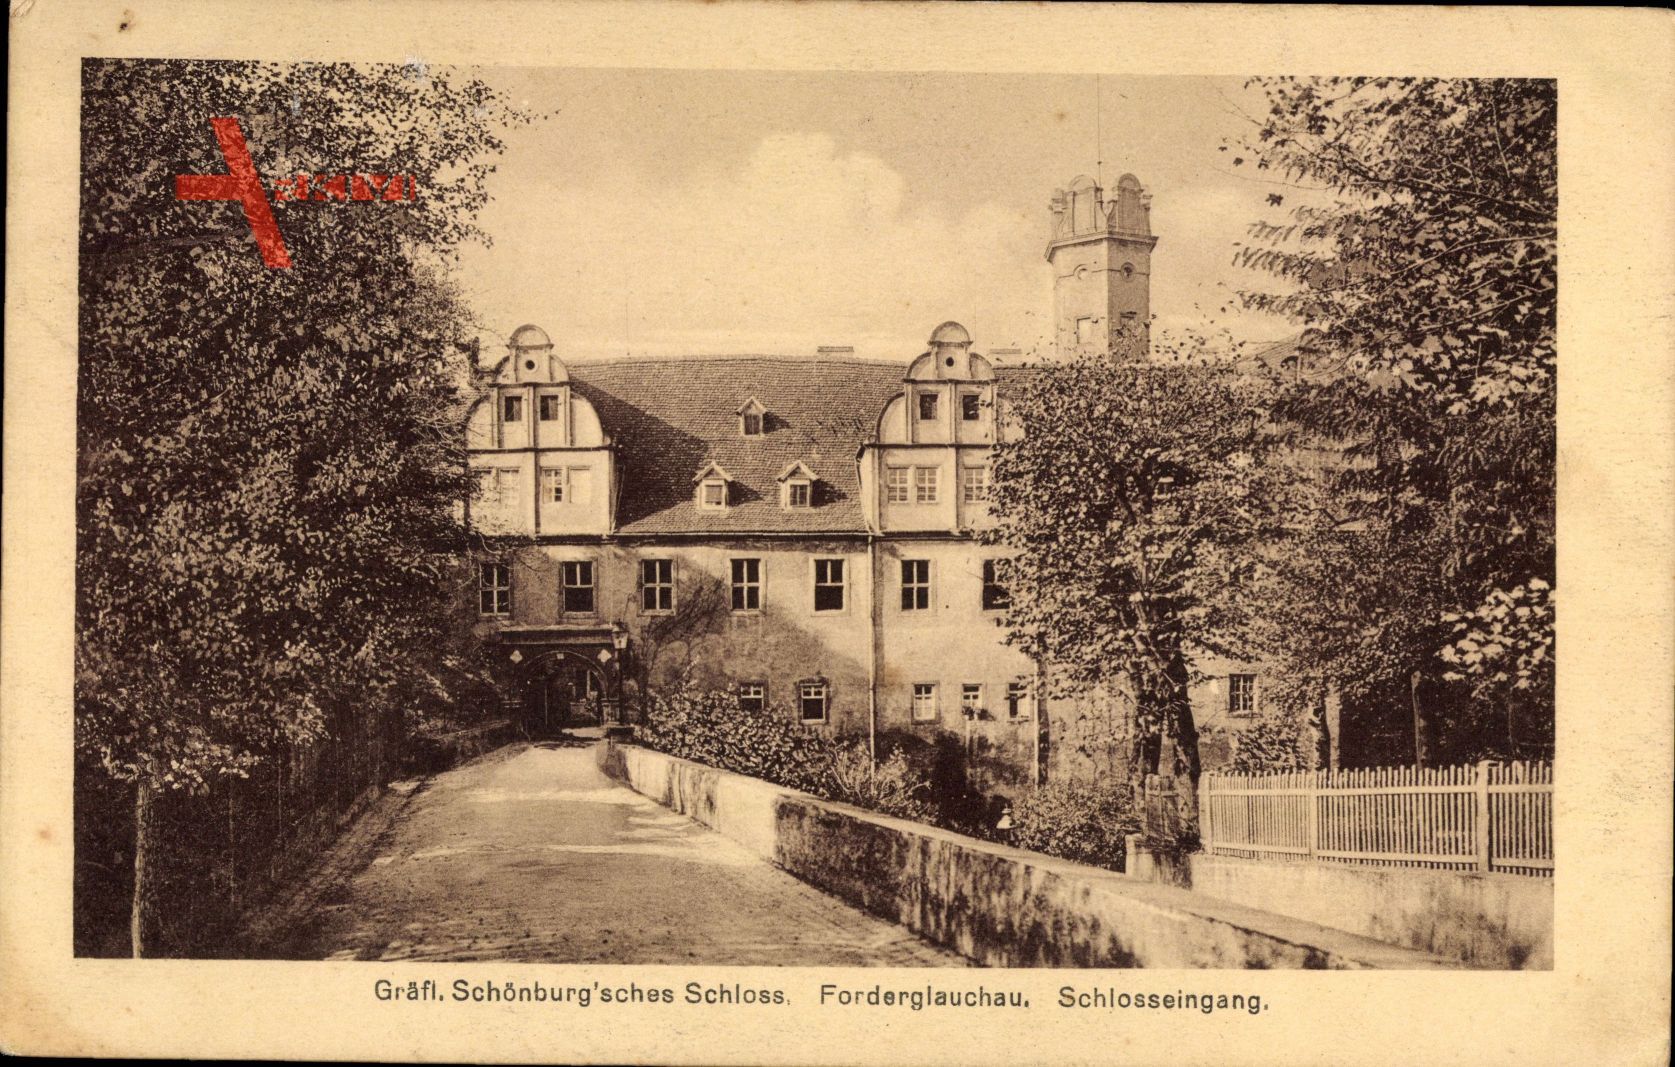 Glauchau, Blick auf Gräfl. Schönburgsches Schloss Forderglauchau, Eingang